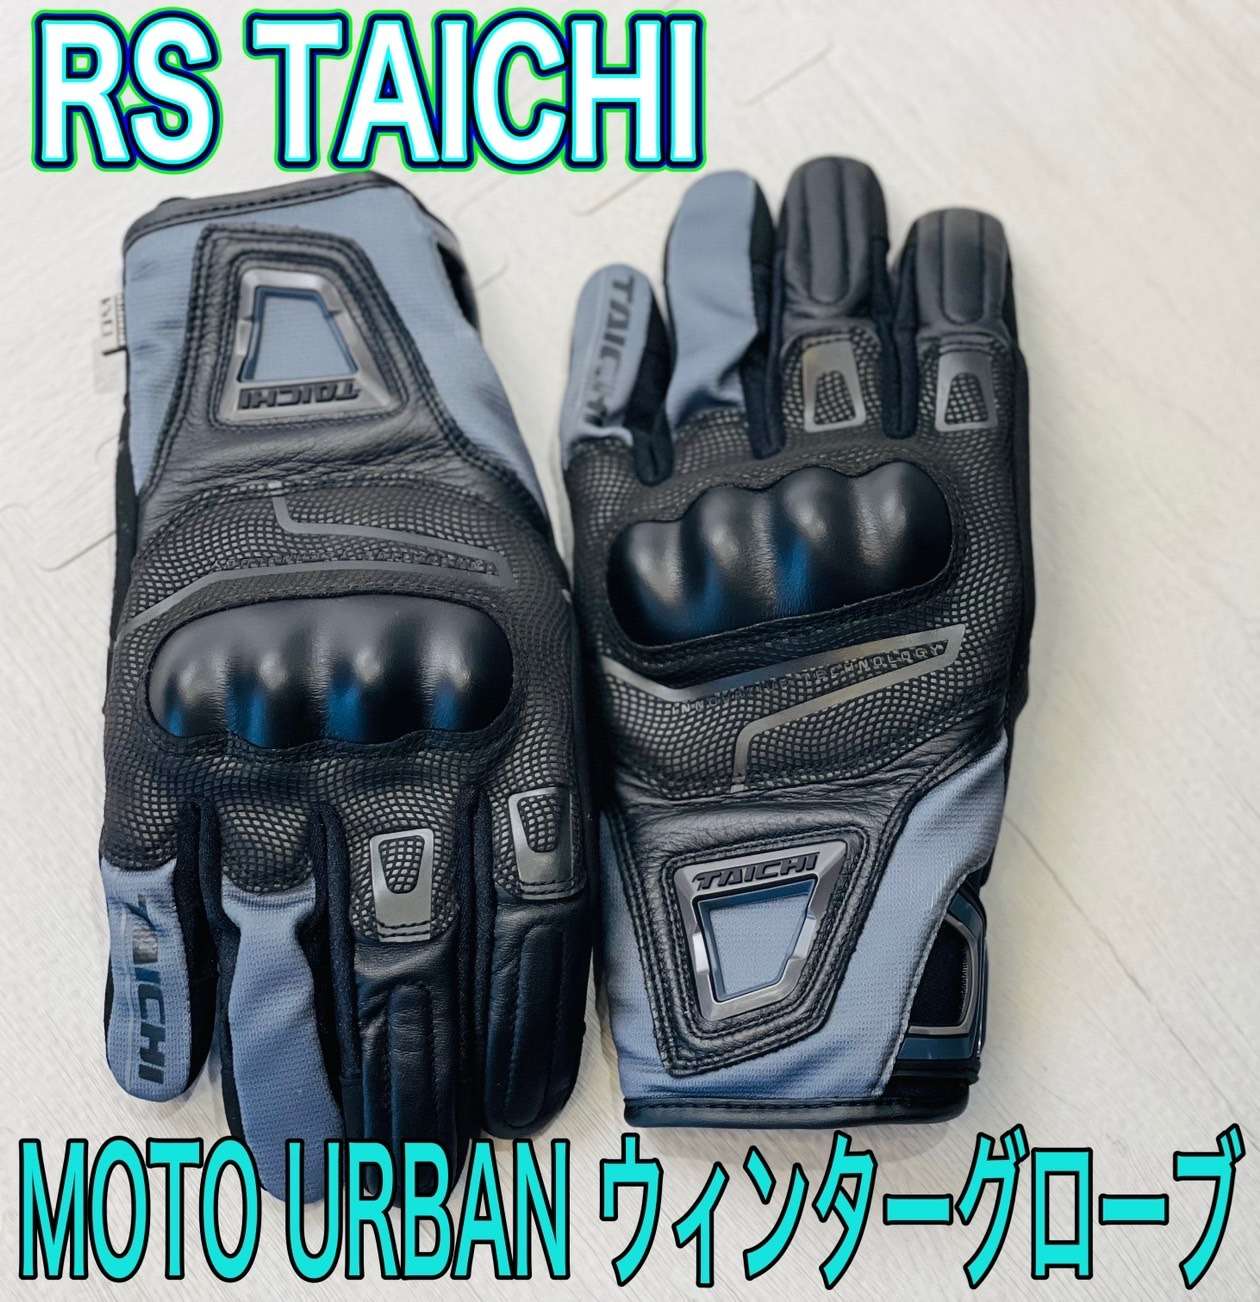 💙ストリートモデルのウィンターグローブ入荷✨ 【RS TAICHI / MOTO URBAN ウィンターグローブ】💙